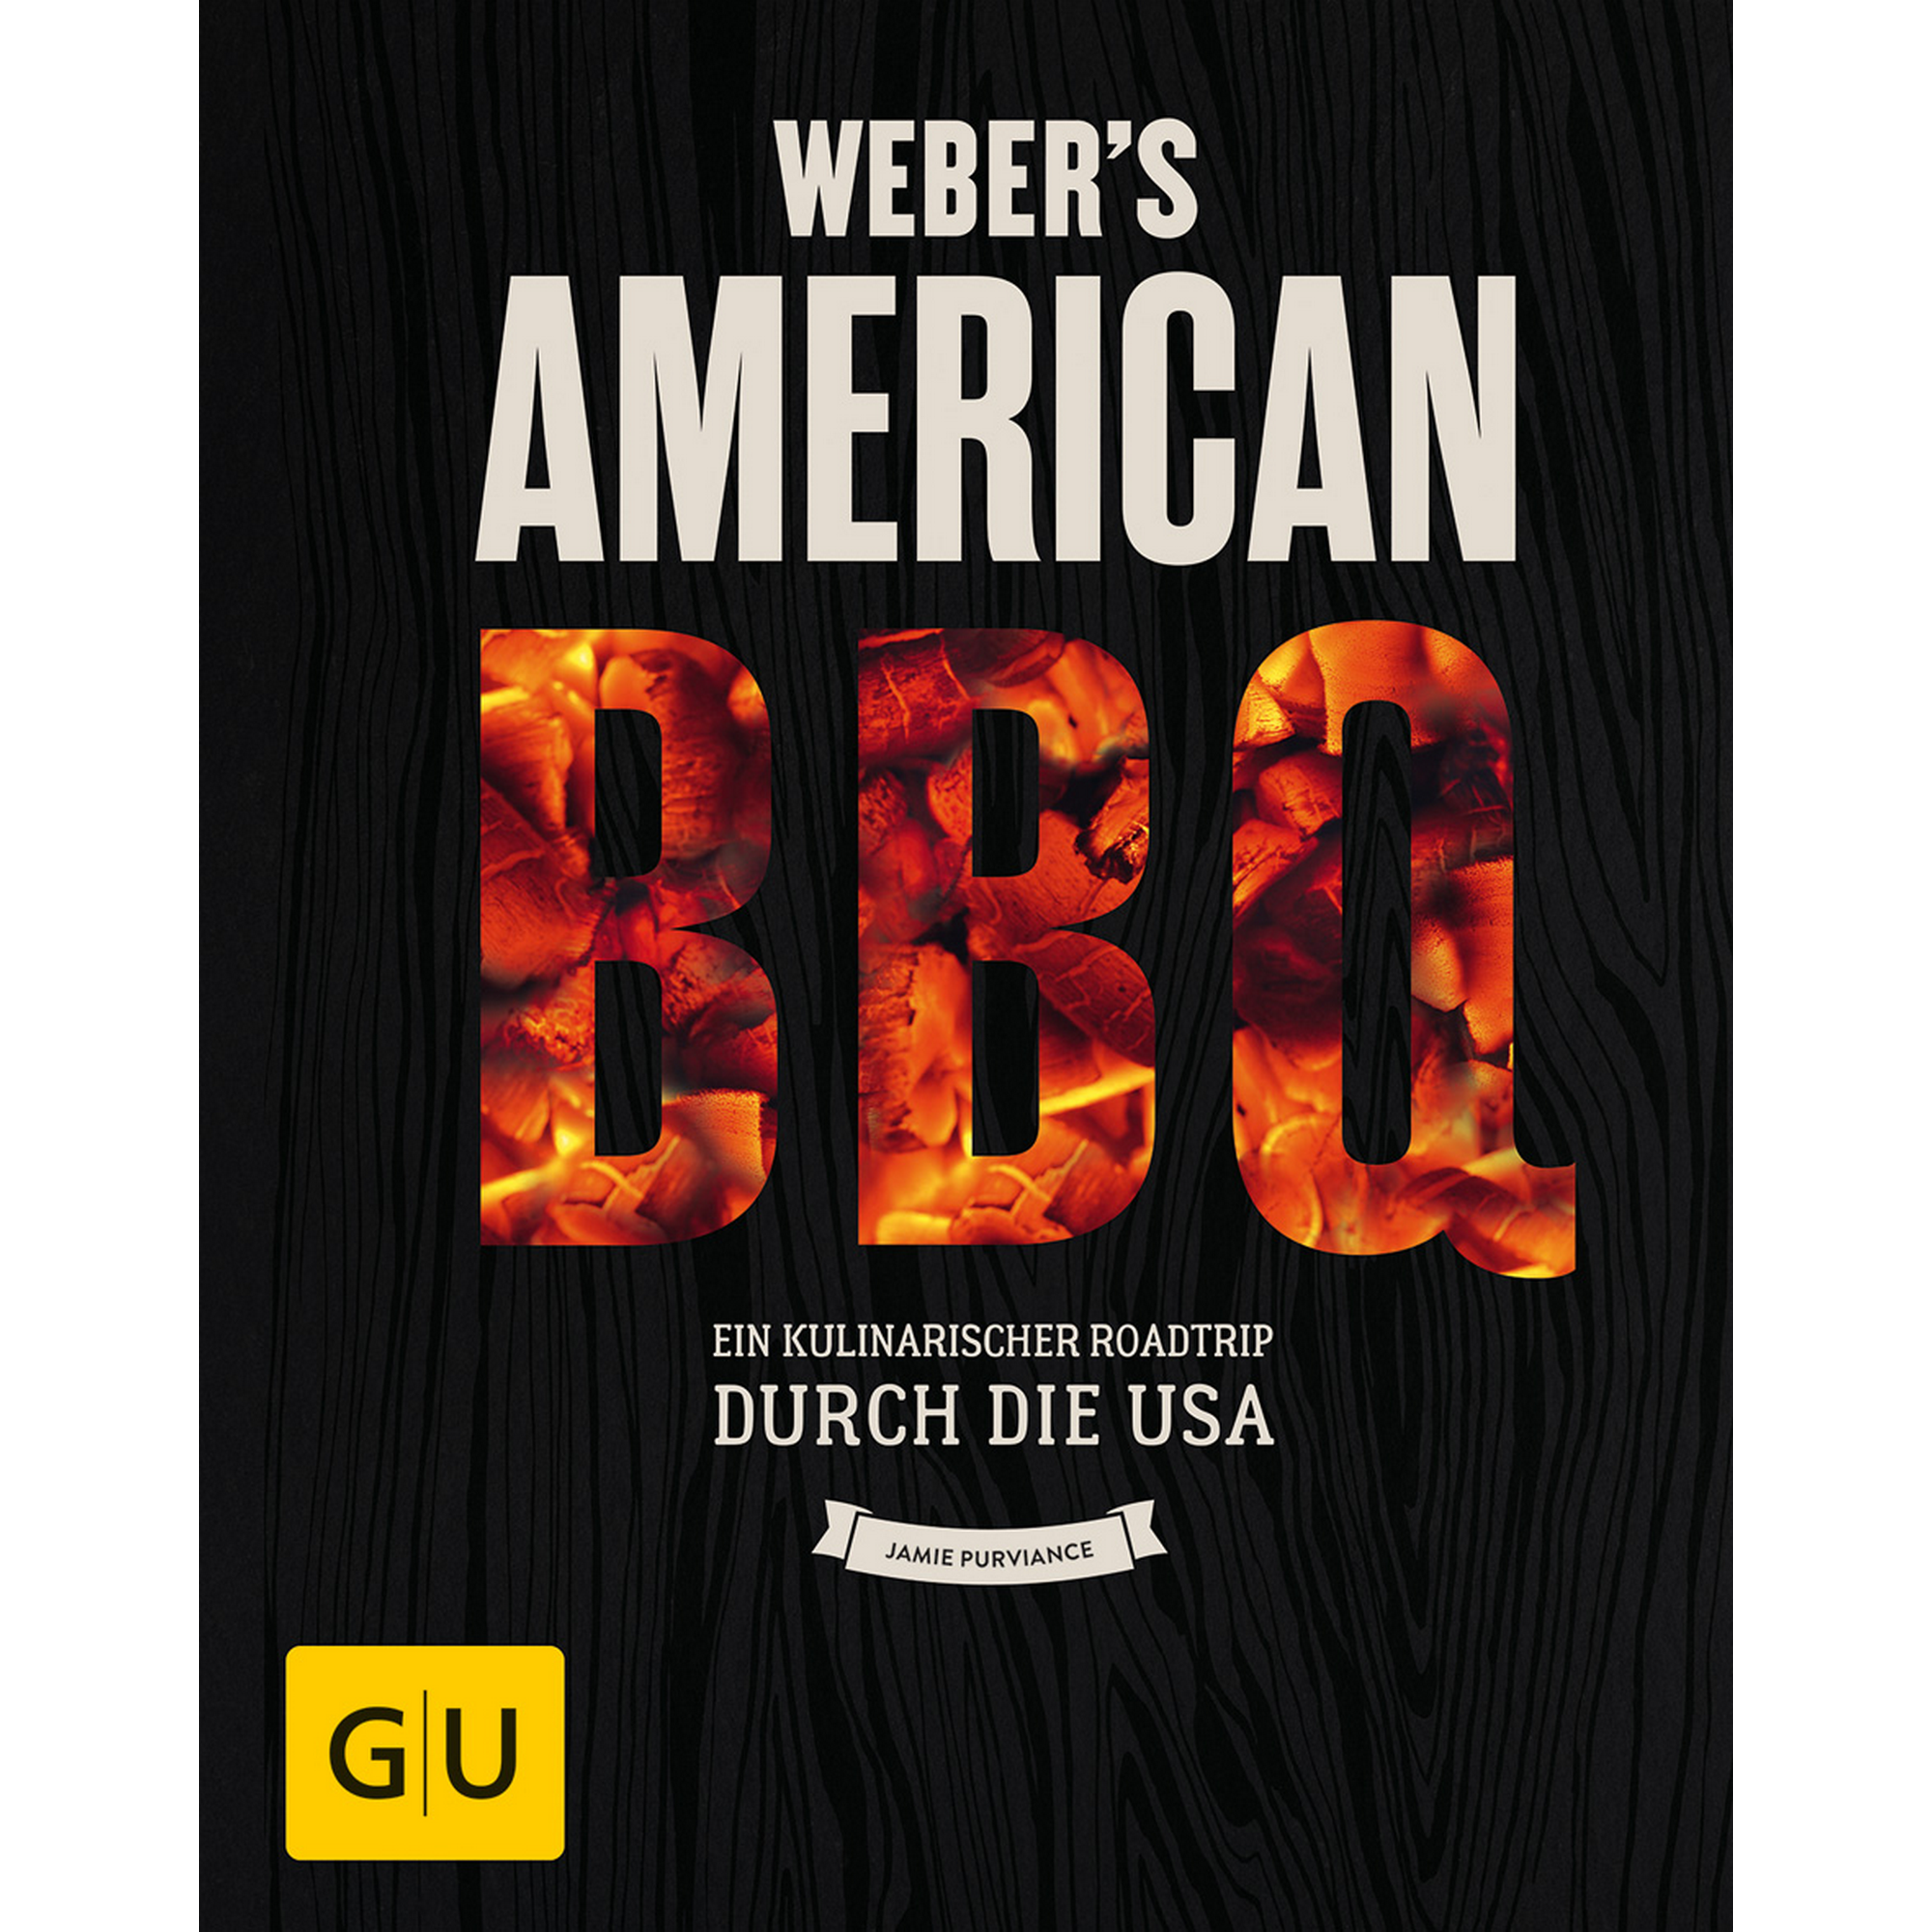 Grillbuch Jamie Purviance 'Weber's American BBQ: Ein kulinarischer Roadtrip durch die USA' + product picture